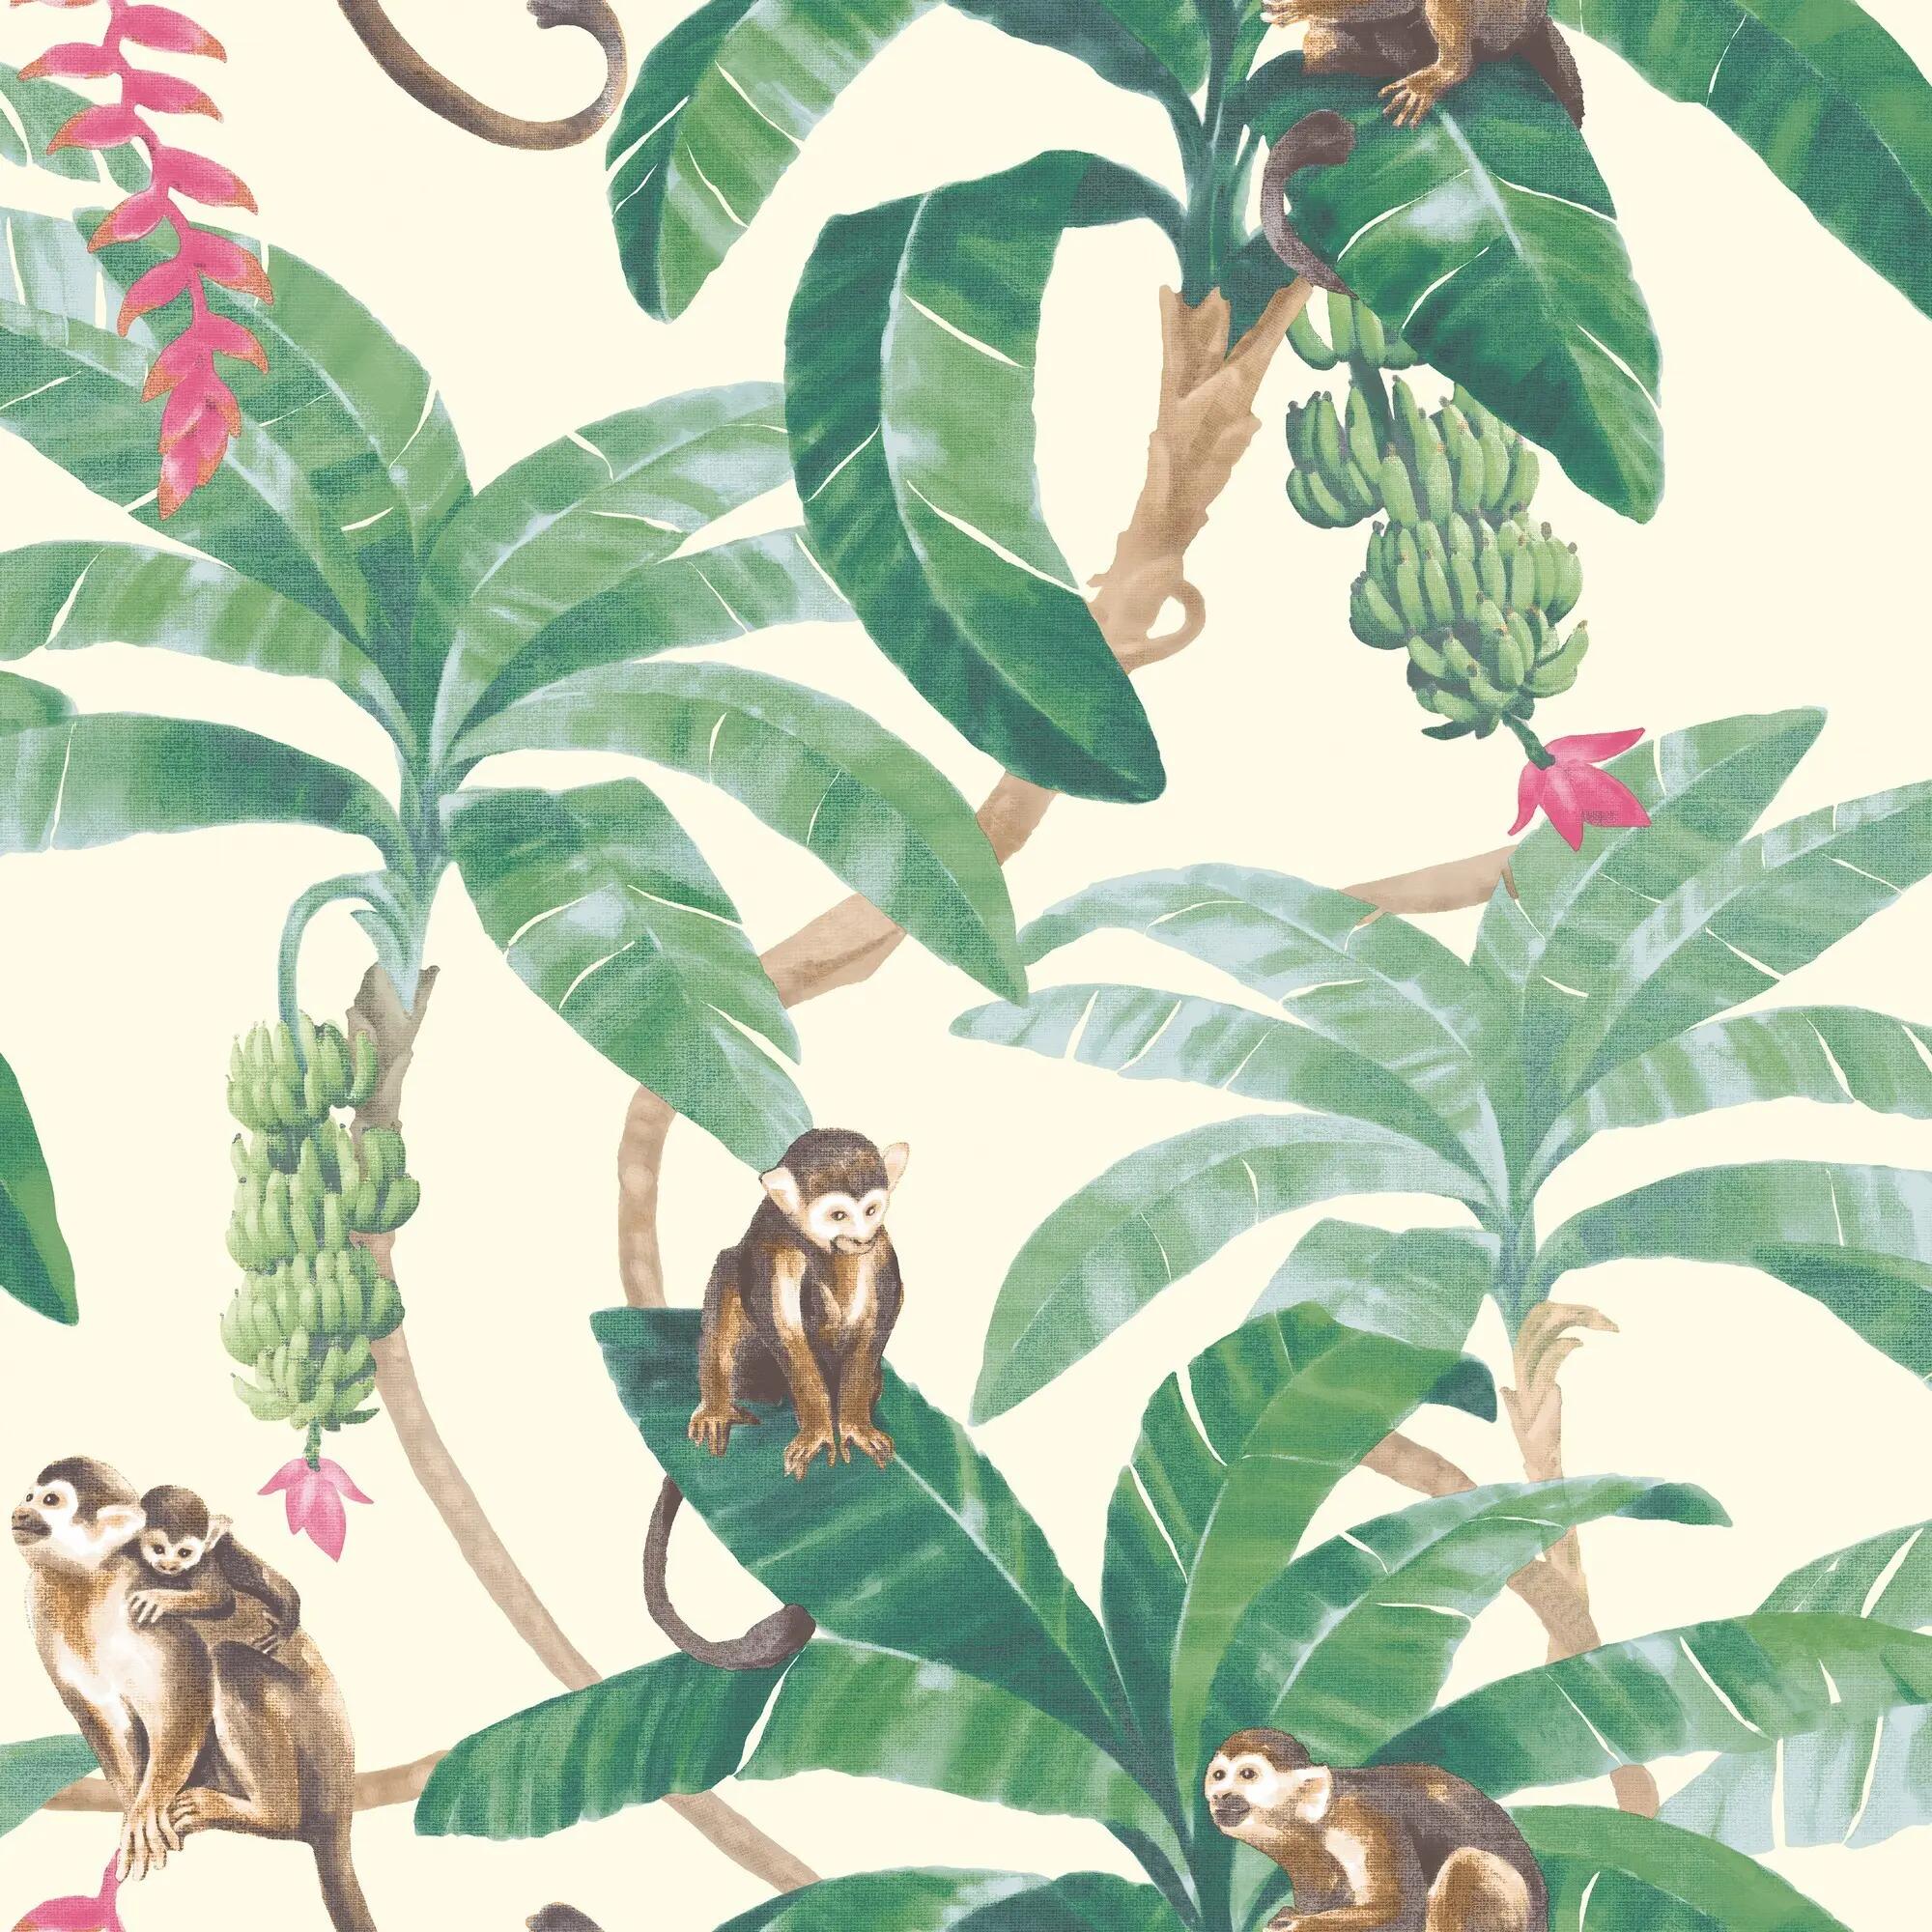 Cartão Postal Macacos Engraçados